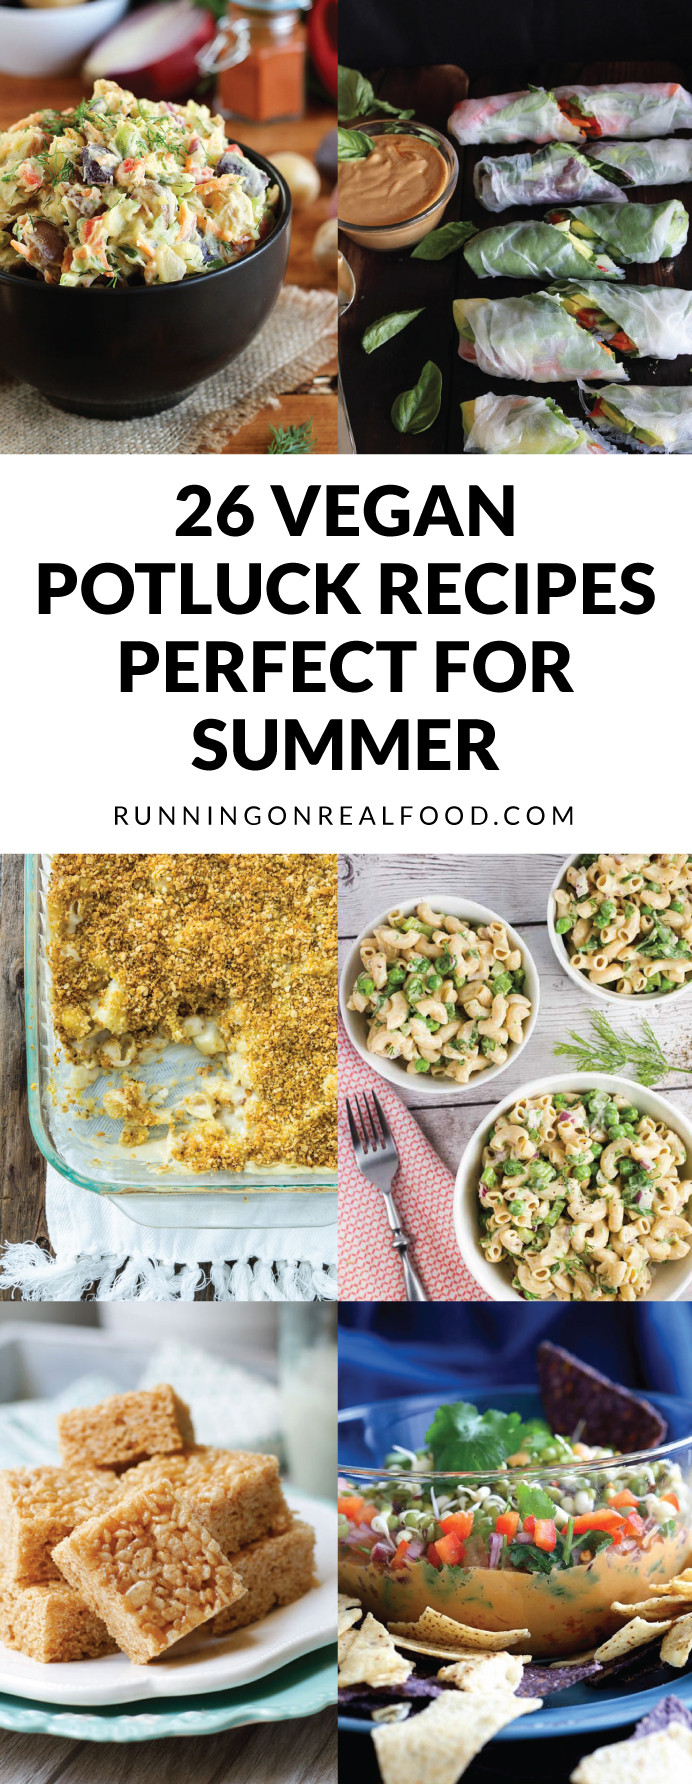 Easy Vegetarian Potluck Recipes
 26 Vegan Potluck Recipes Perfect for Summer